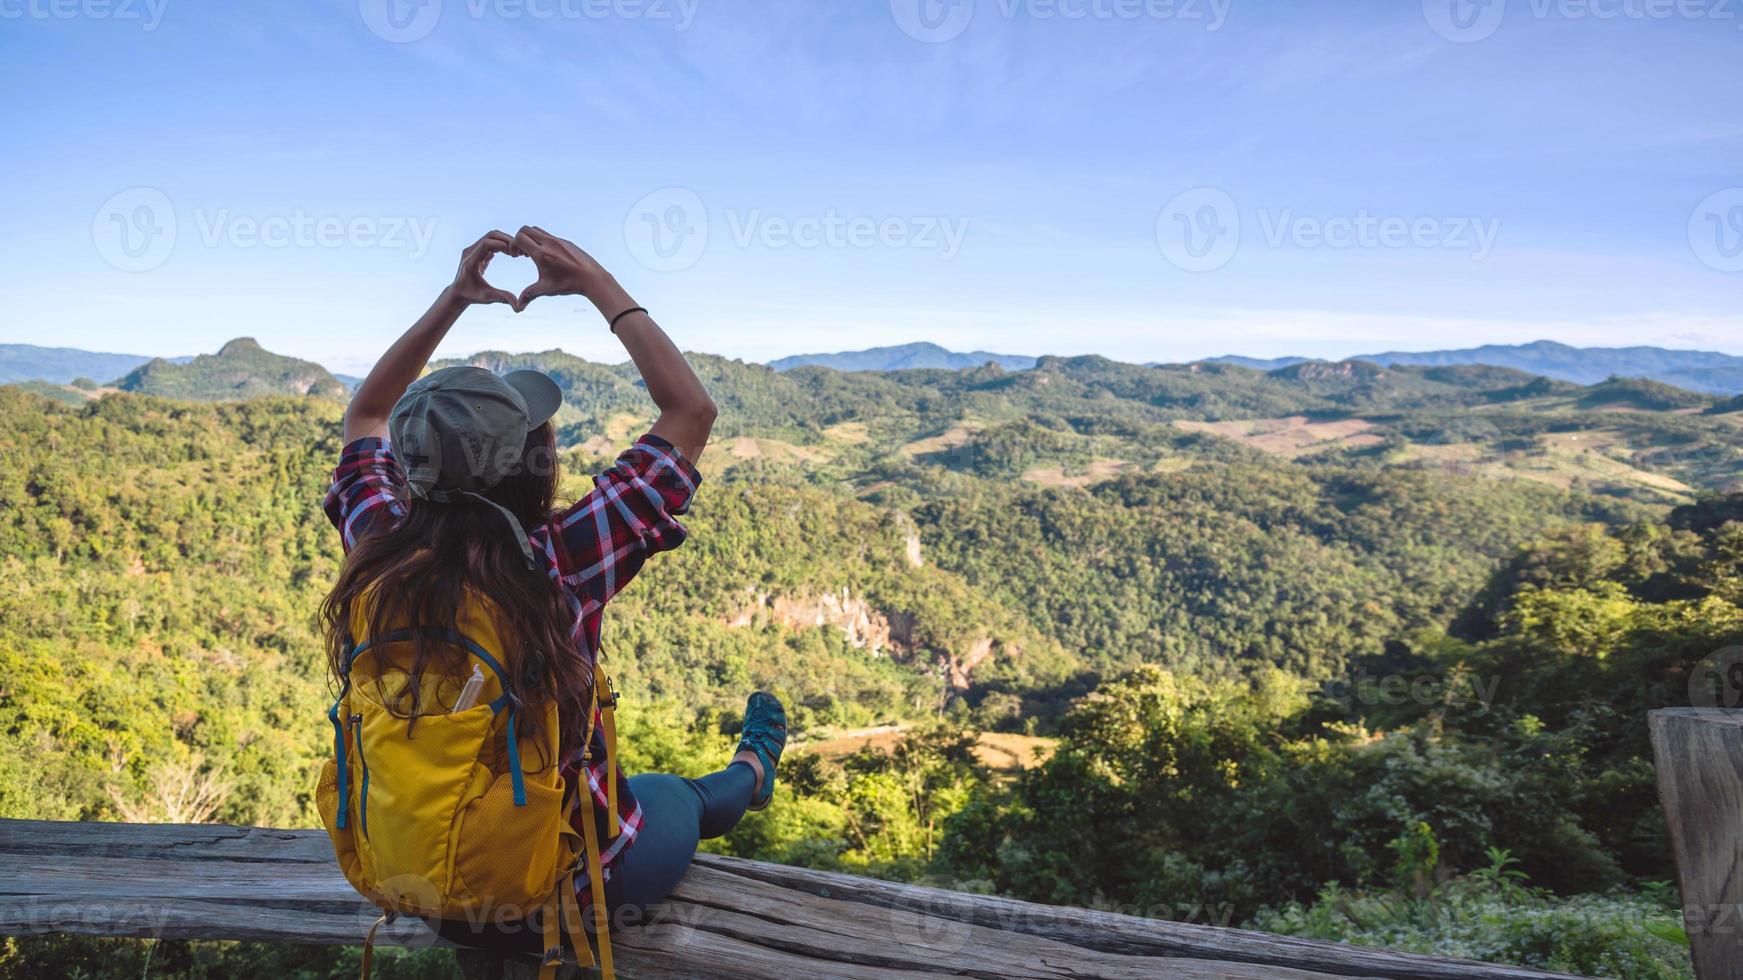 giovane turista con zaini felici di viaggiare ha alzato la mano per fare una forma a cuore e godersi lo scenario naturale sulla montagna. foto